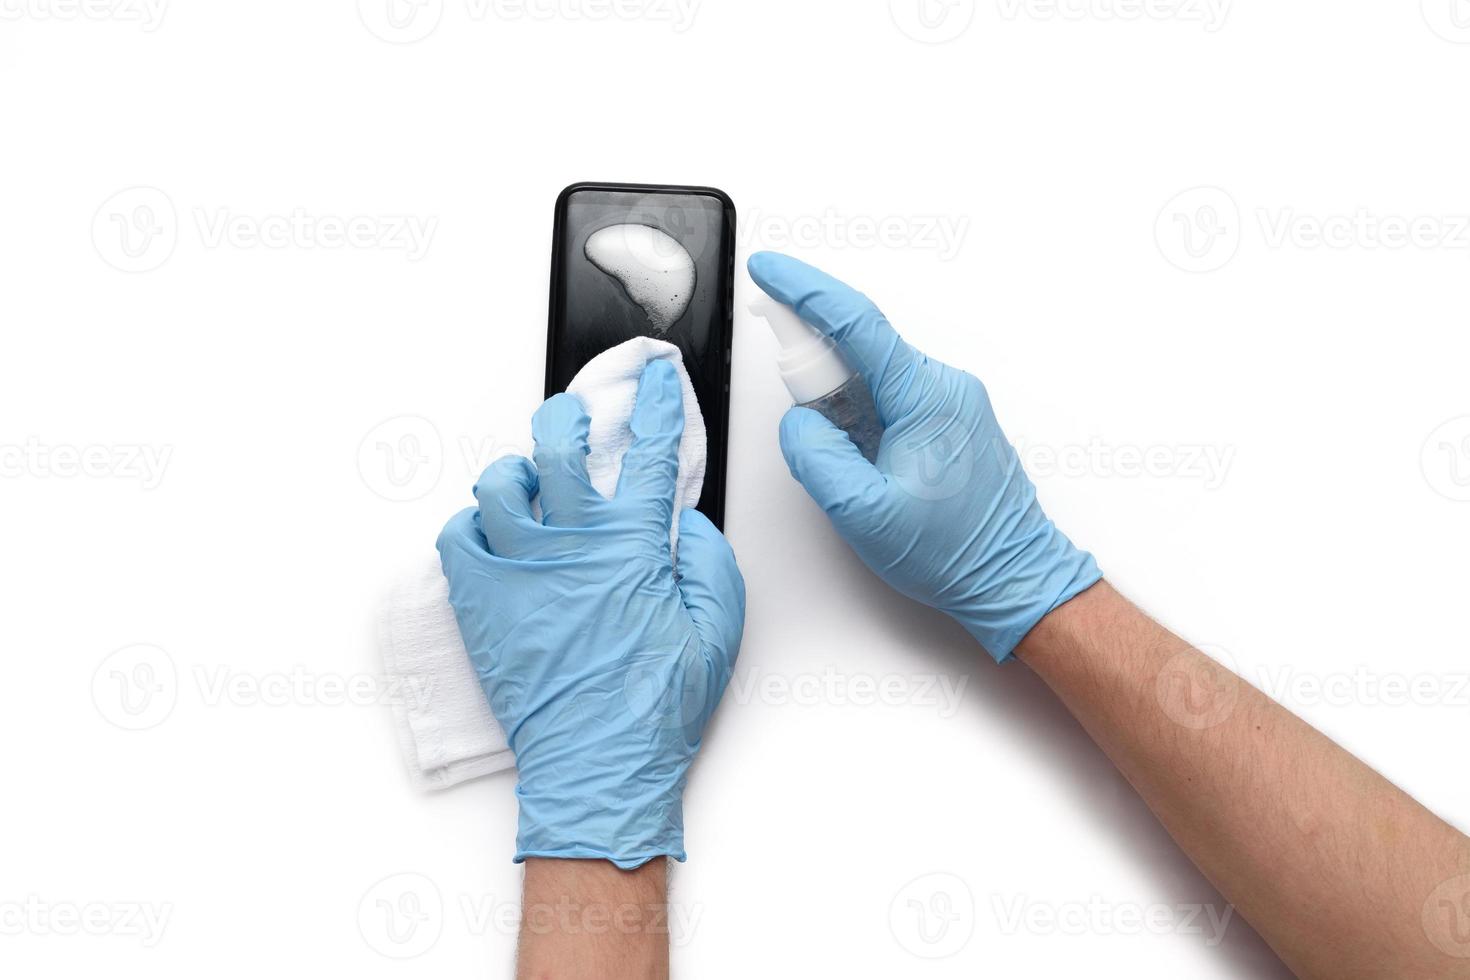 les mains masculines dans des gants médicaux traitent le téléphone avec un antiseptique afin de ne pas attraper le coronavirus. isolé sur fond blanc. photo